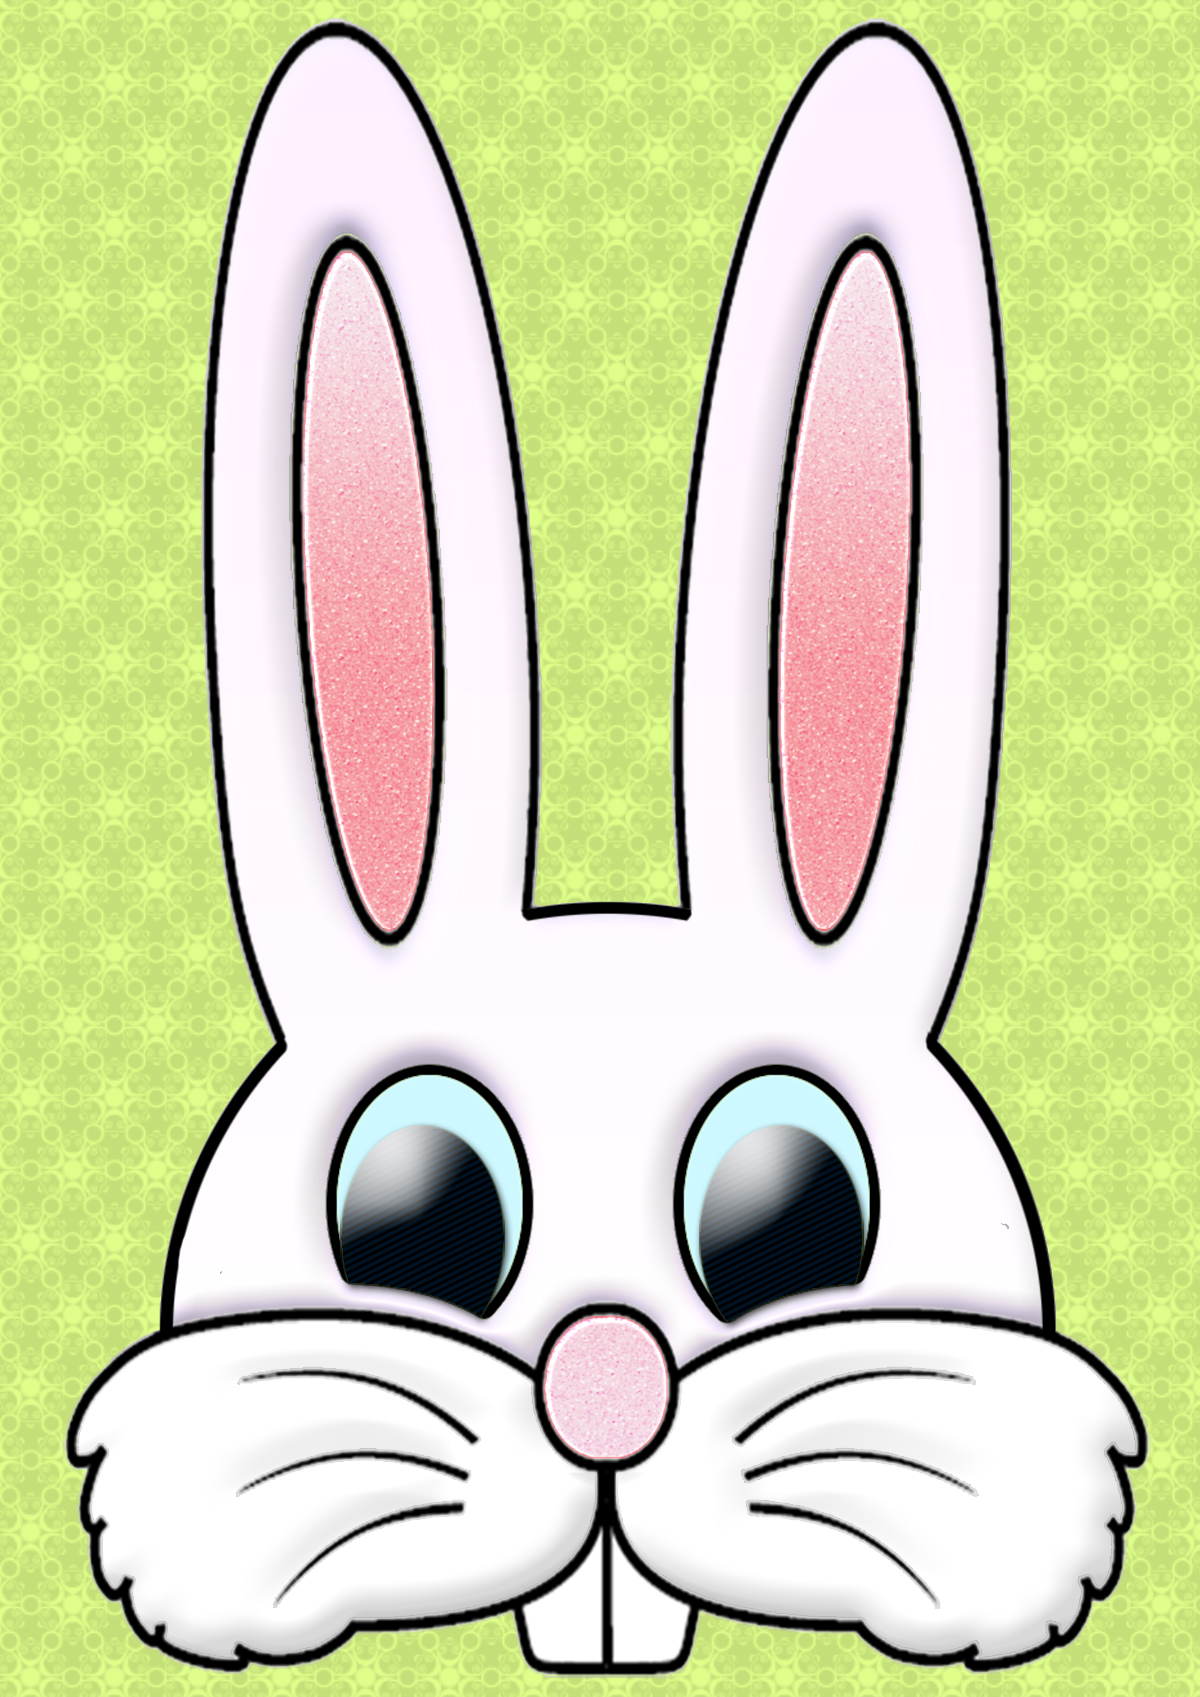 bunny-ears-cutout-clipart-best